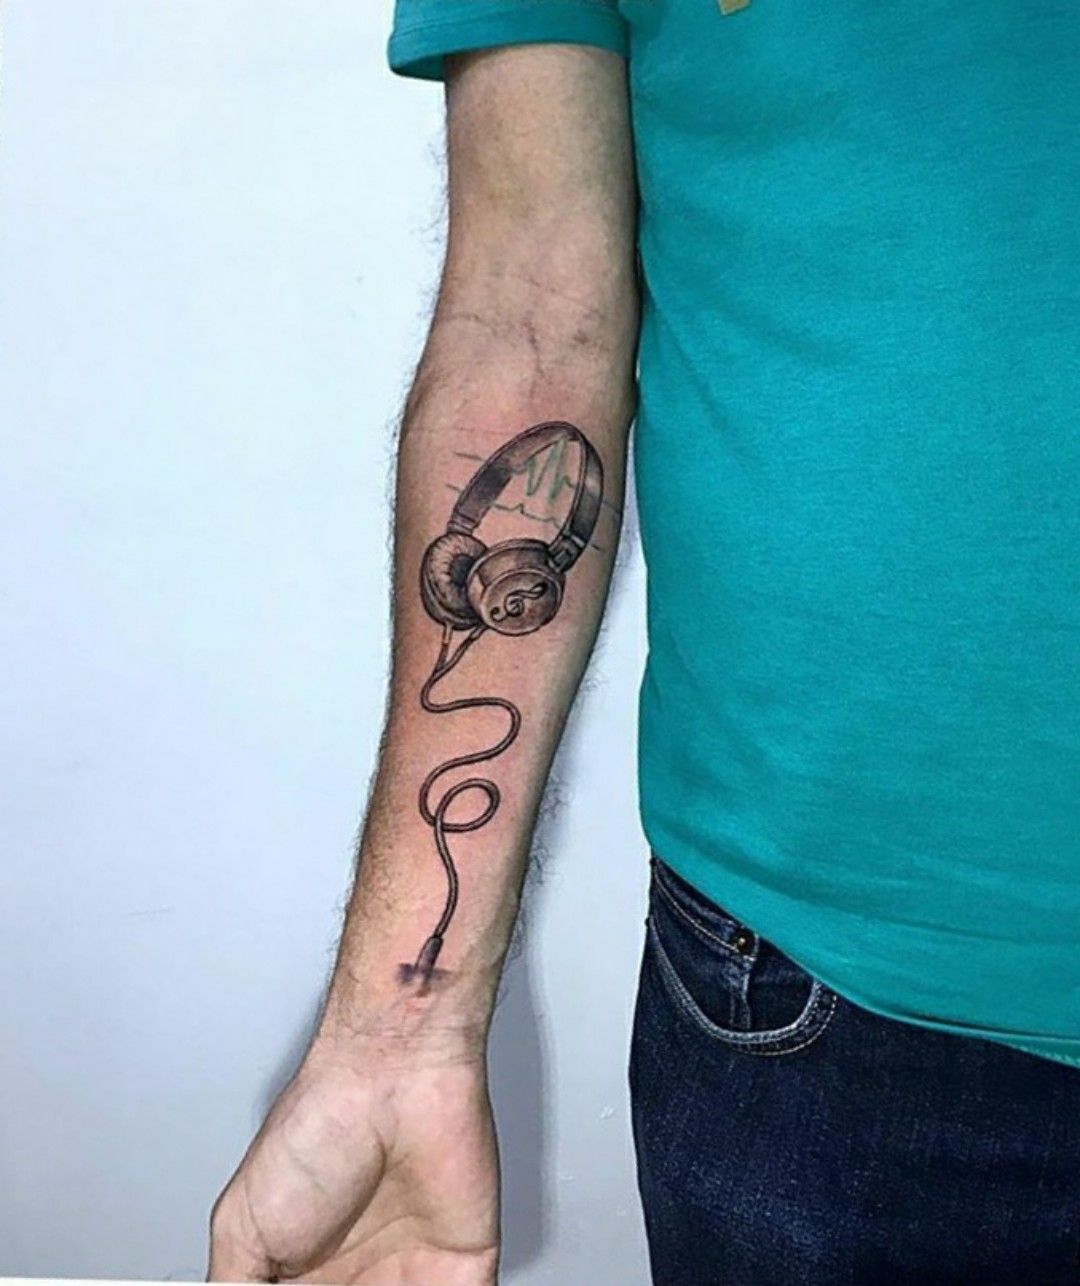 Submundo Tattoo e Piercing - Tattoo Lettering na mão e desenhos no dedo,  saco de dinheiro, caveira, metralhadora e um microfone #tatuagem #tattoo  #submundotattoo #ideiastattoo #tatuagembrasil #tattooed #tatuagemideias  #paranagua #tatuagemparaná